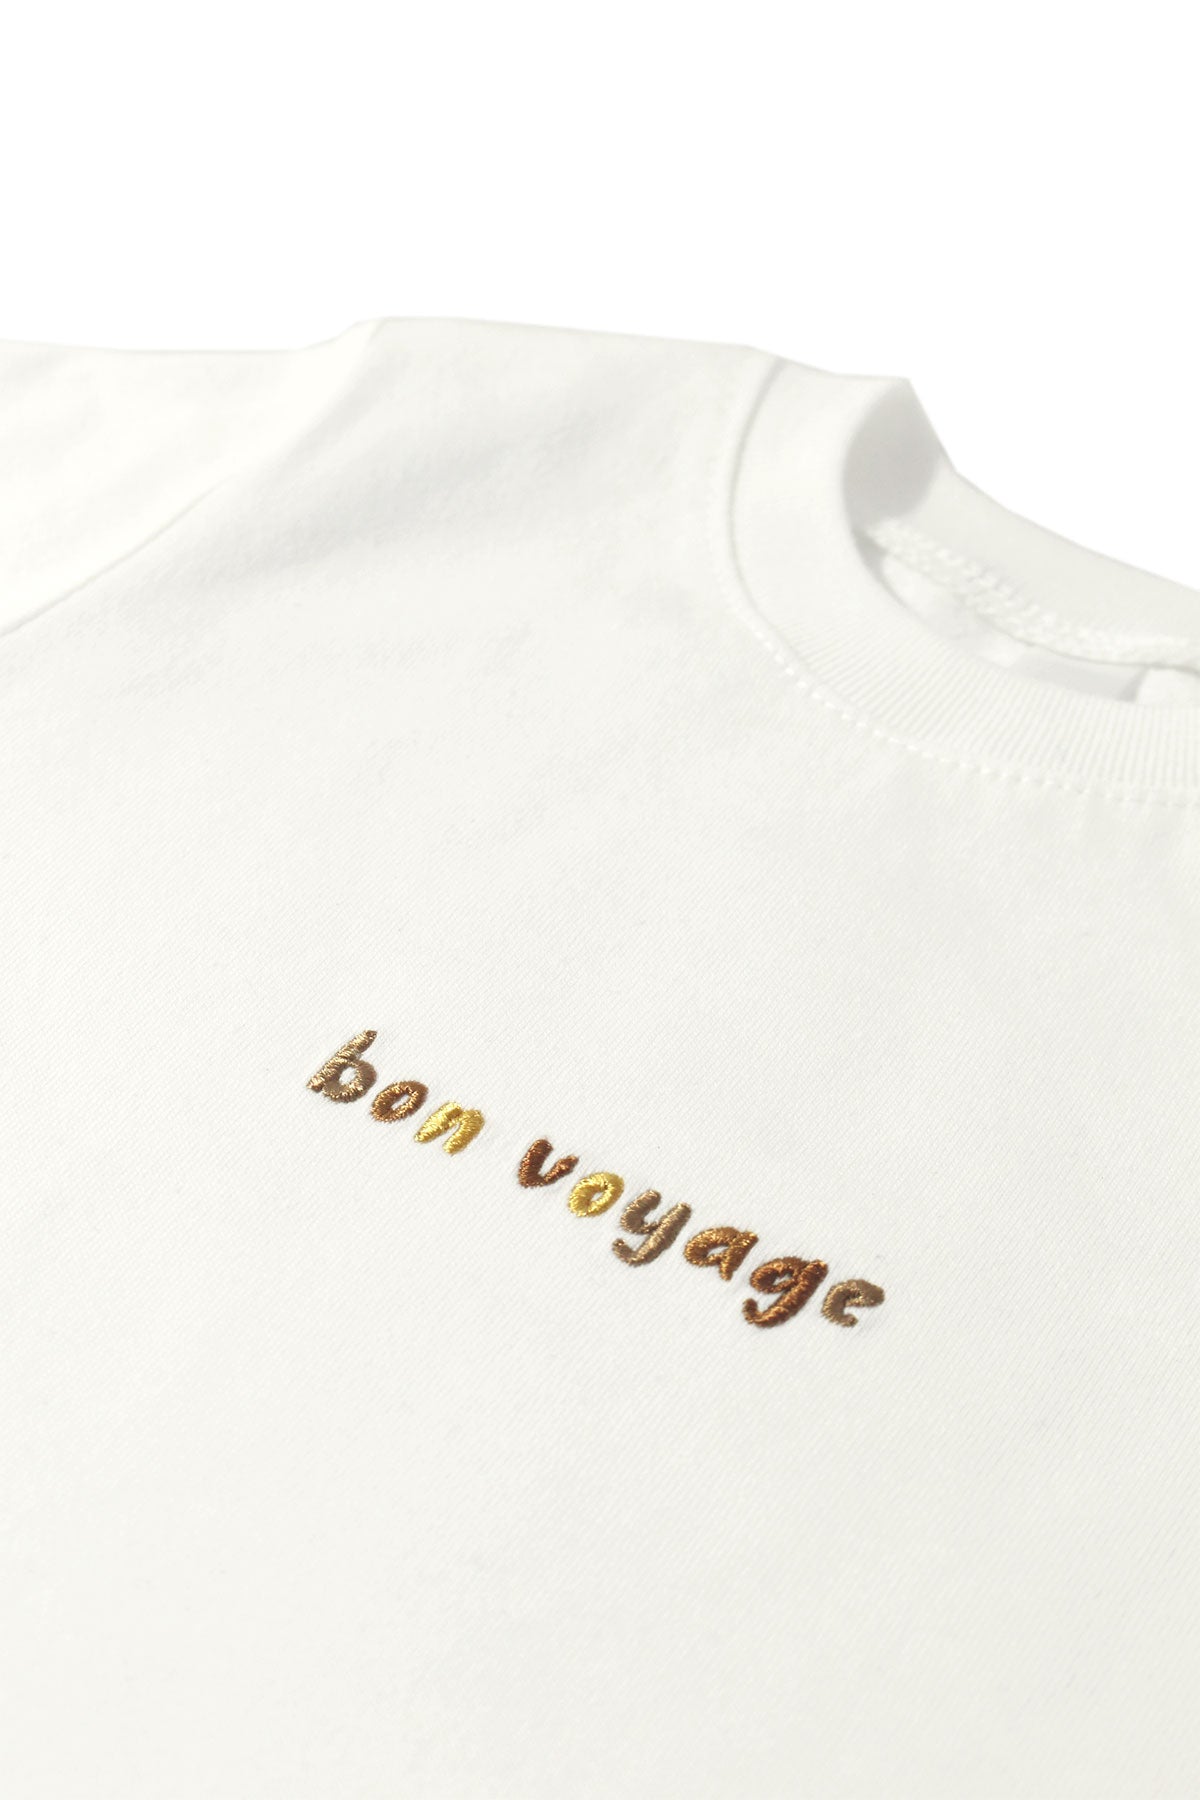 Bon Voyage Nakışlı Slogan Bebek Tshirt